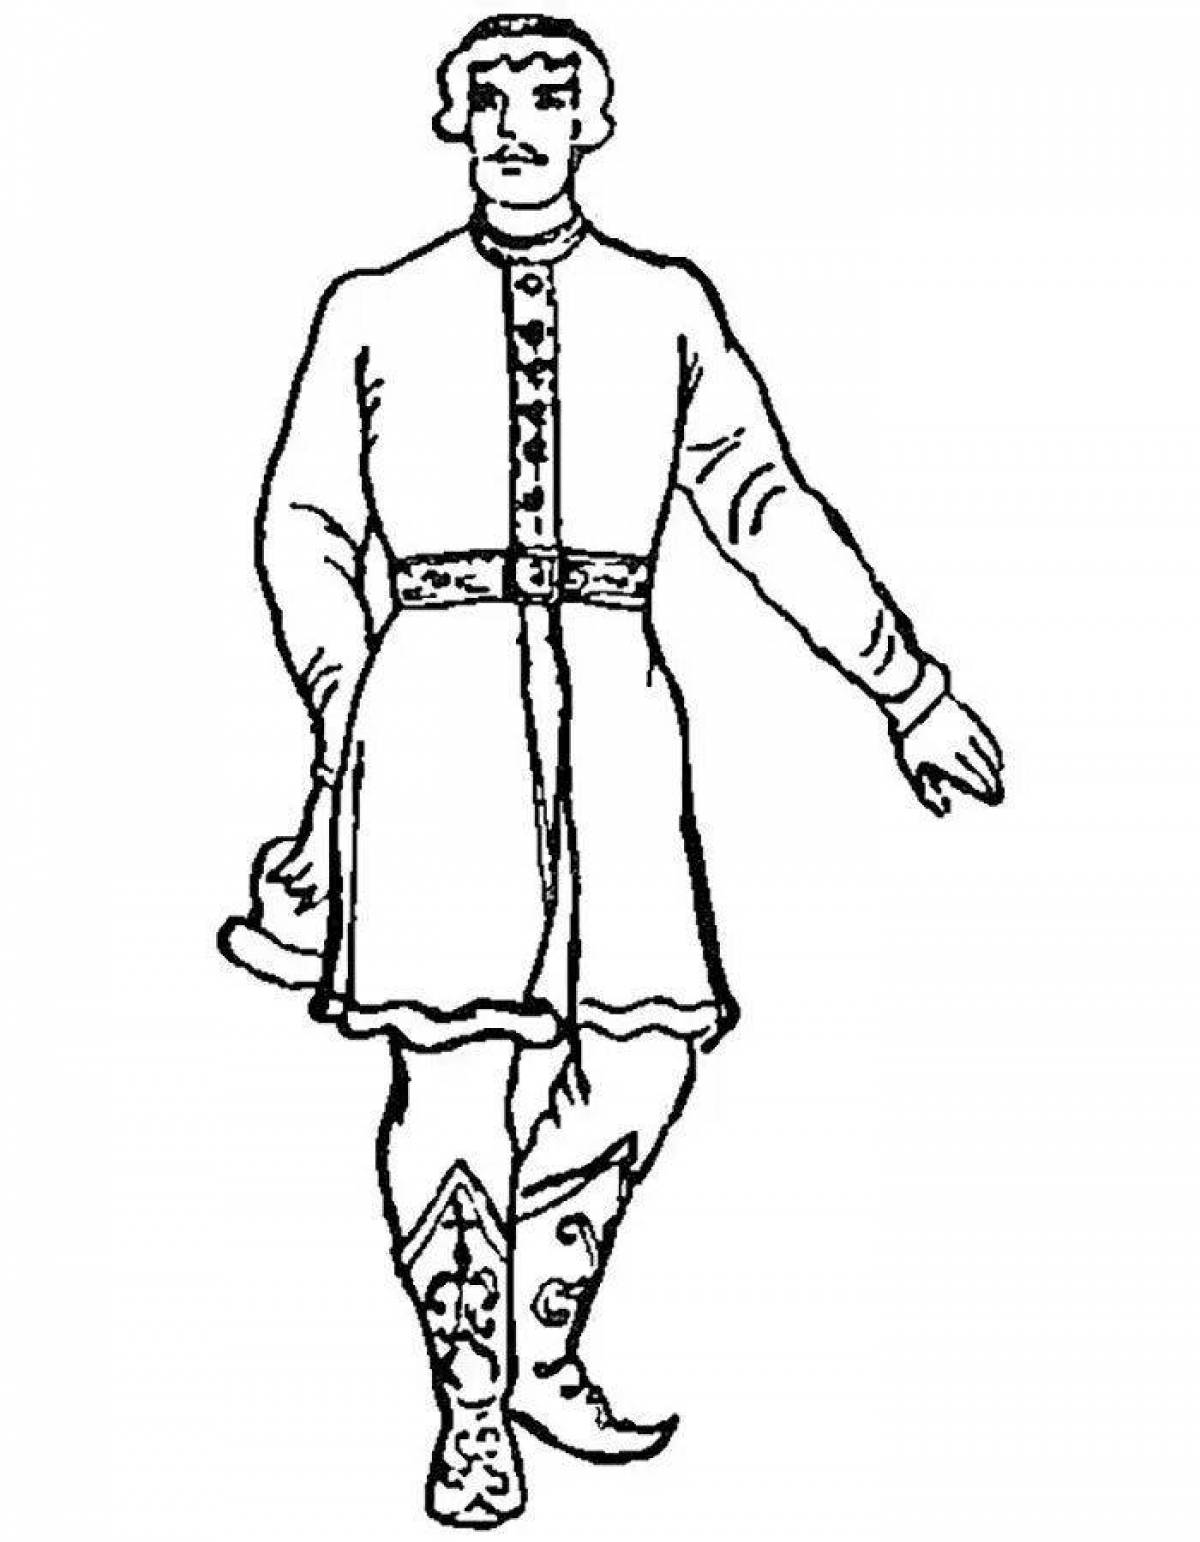 Russian folk costume for men #1